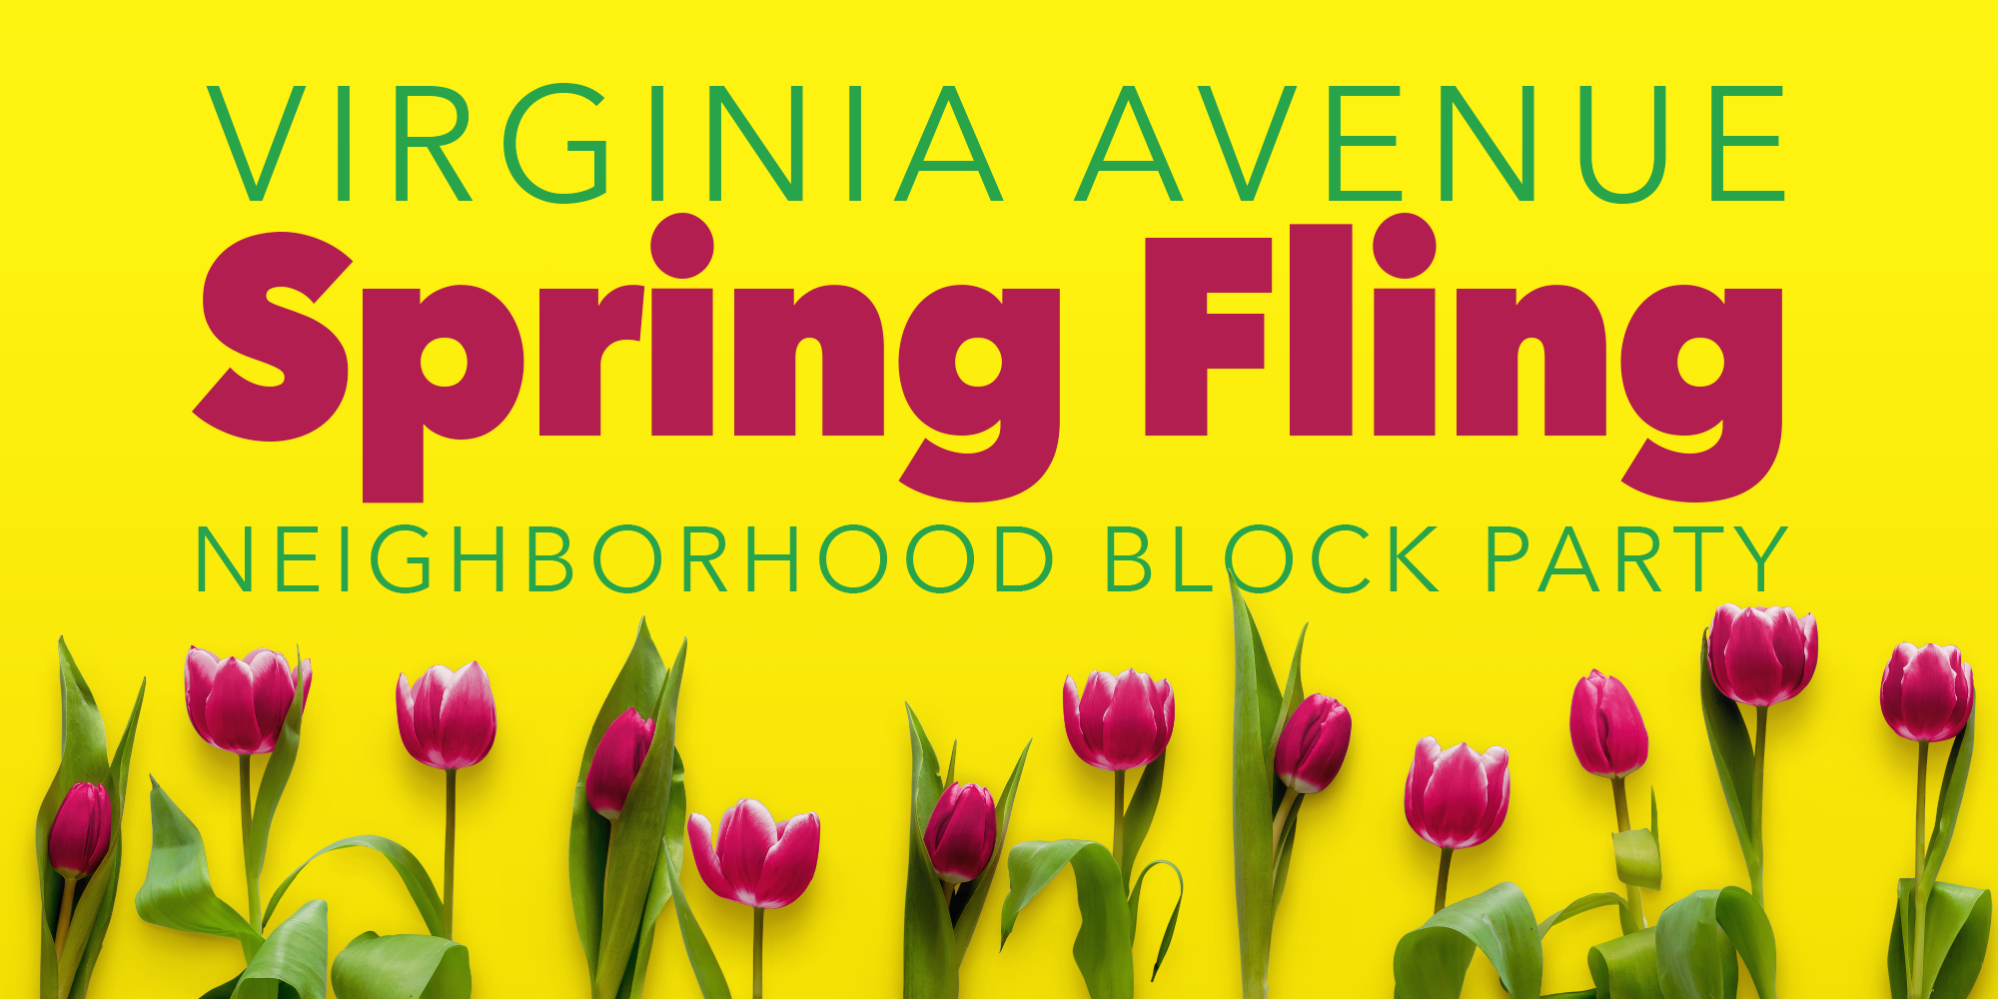 Virginia Avenue Spring Fling neighborhood block party.